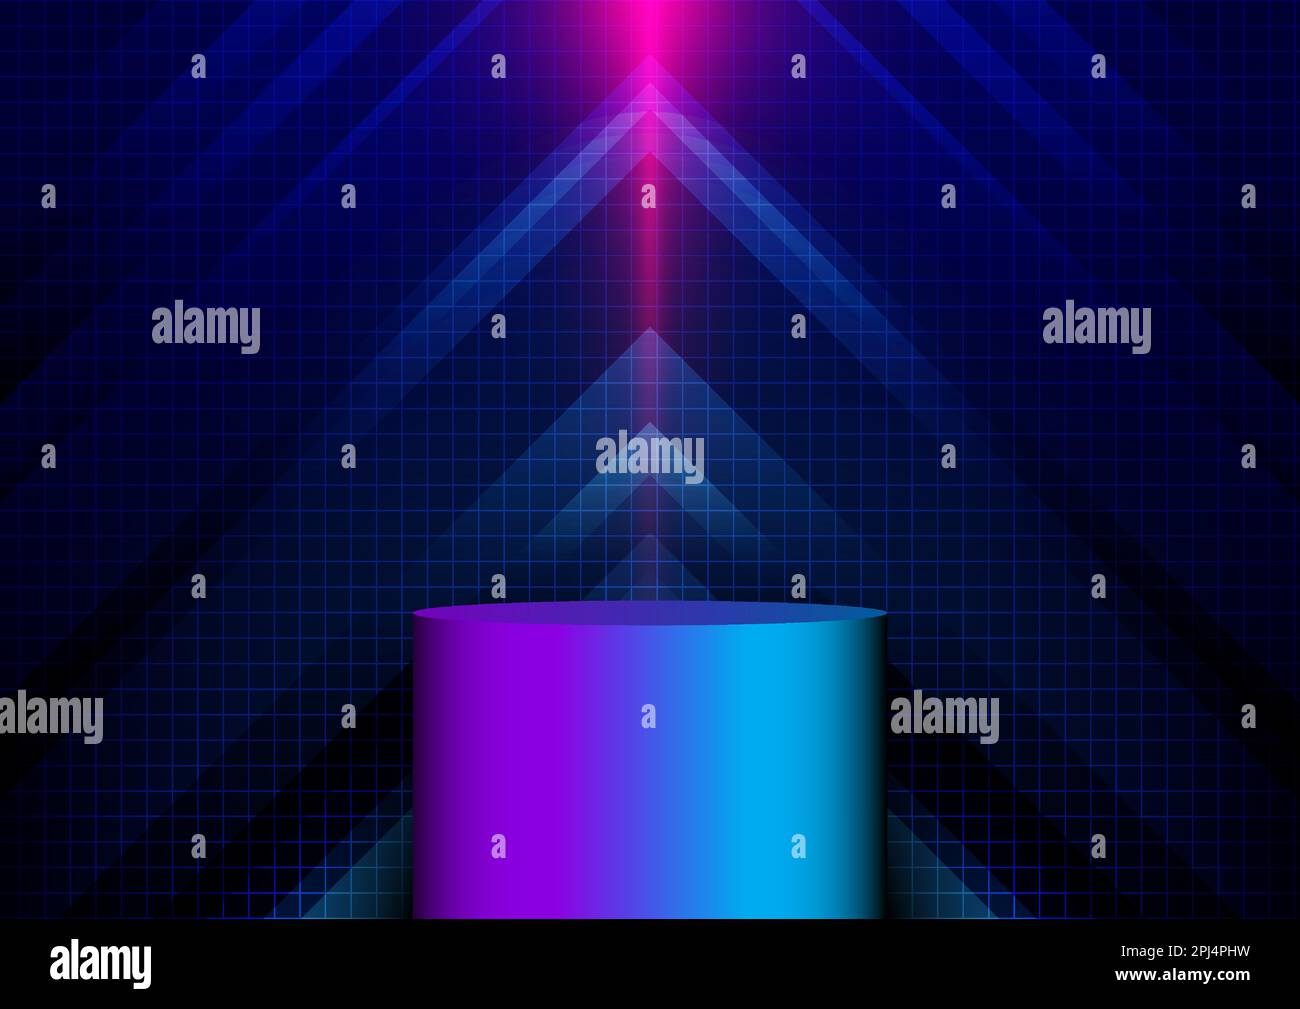 3D couleurs fluo réalistes podium avec flèche bleue abstraite illuminant avec éclairage et grille de lignes sur fond bleu technologie de pointe style cyber-punk. VE Illustration de Vecteur